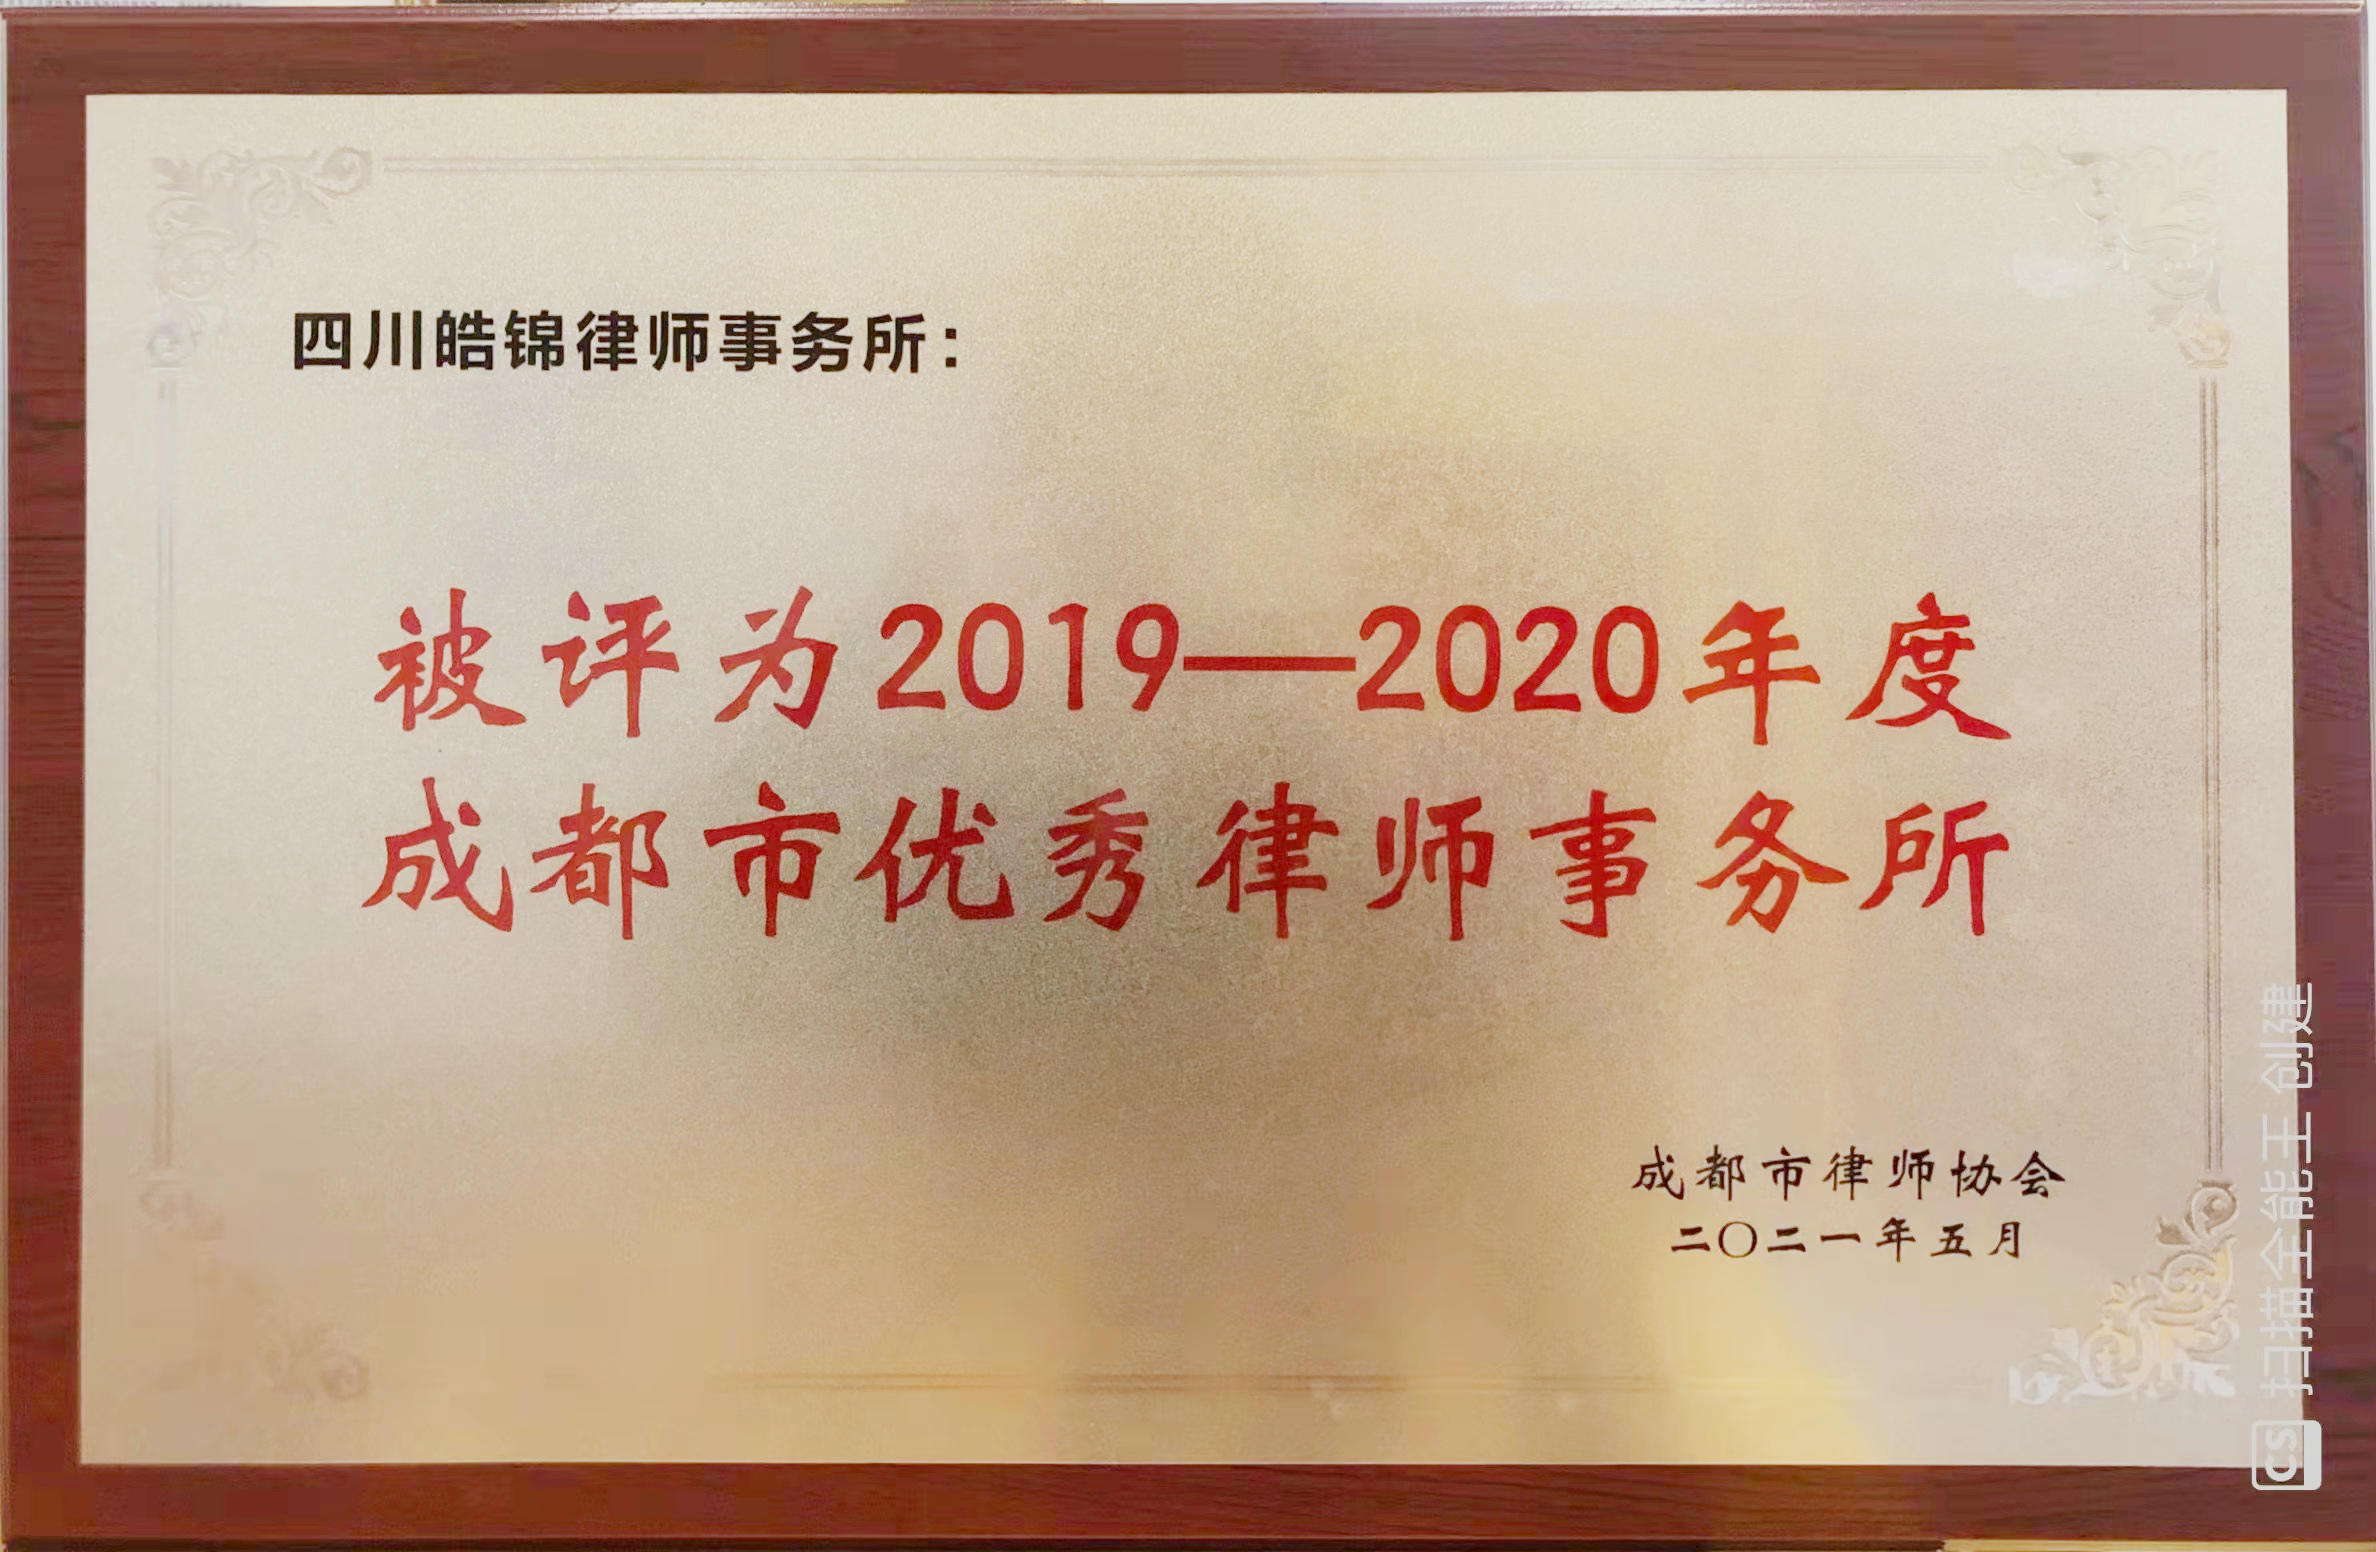 2019年-2020成都市优秀律师事务所